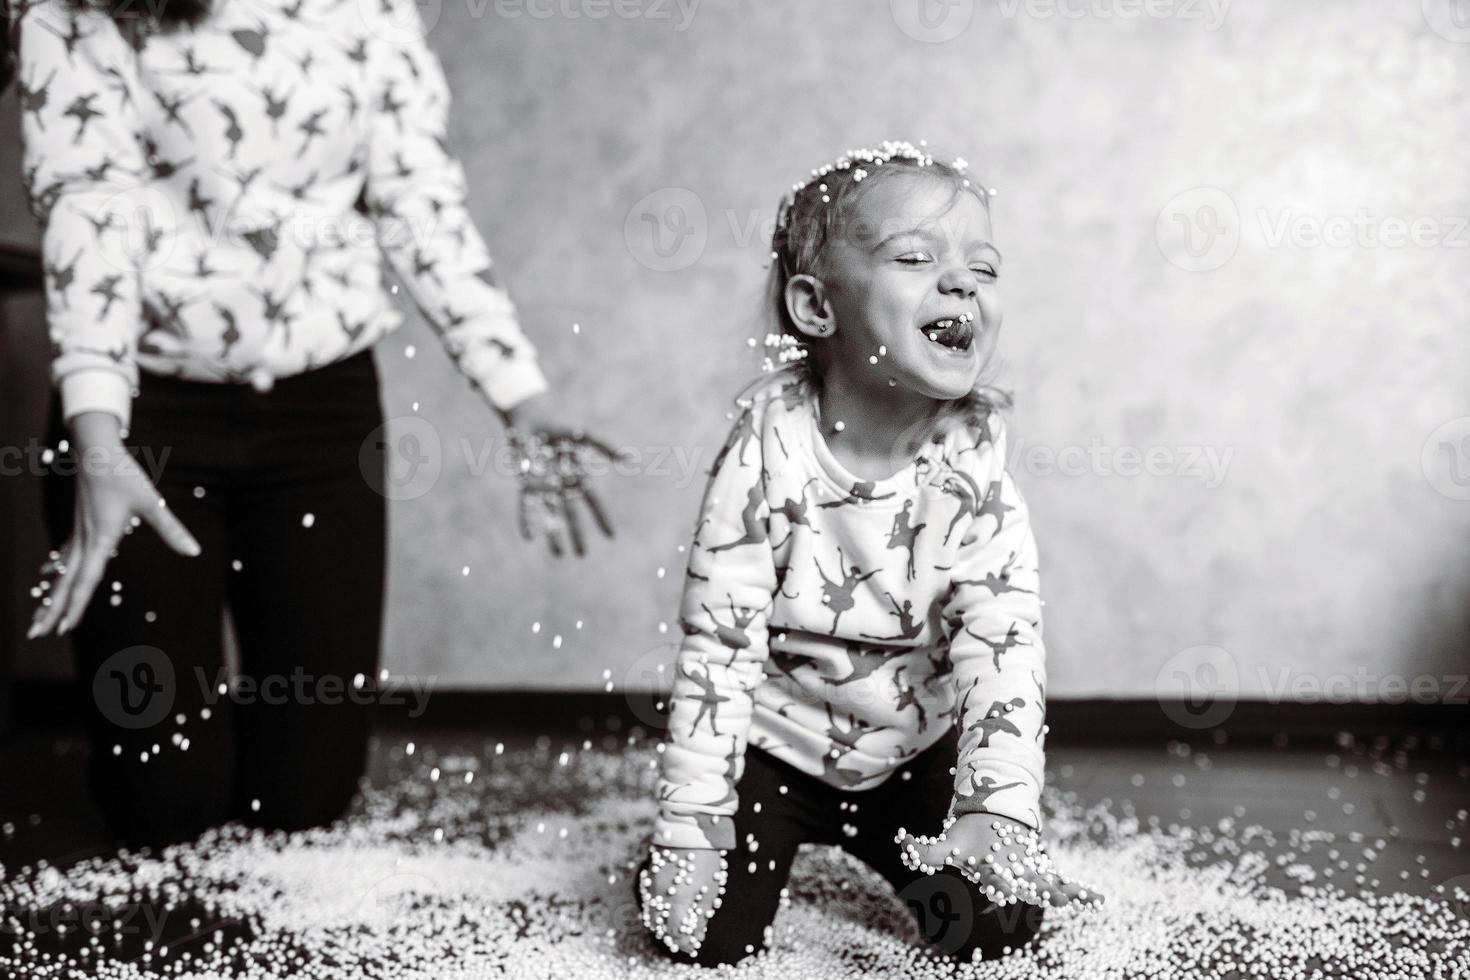 kleines Mädchen spielt mit Schaumstoffbällen foto